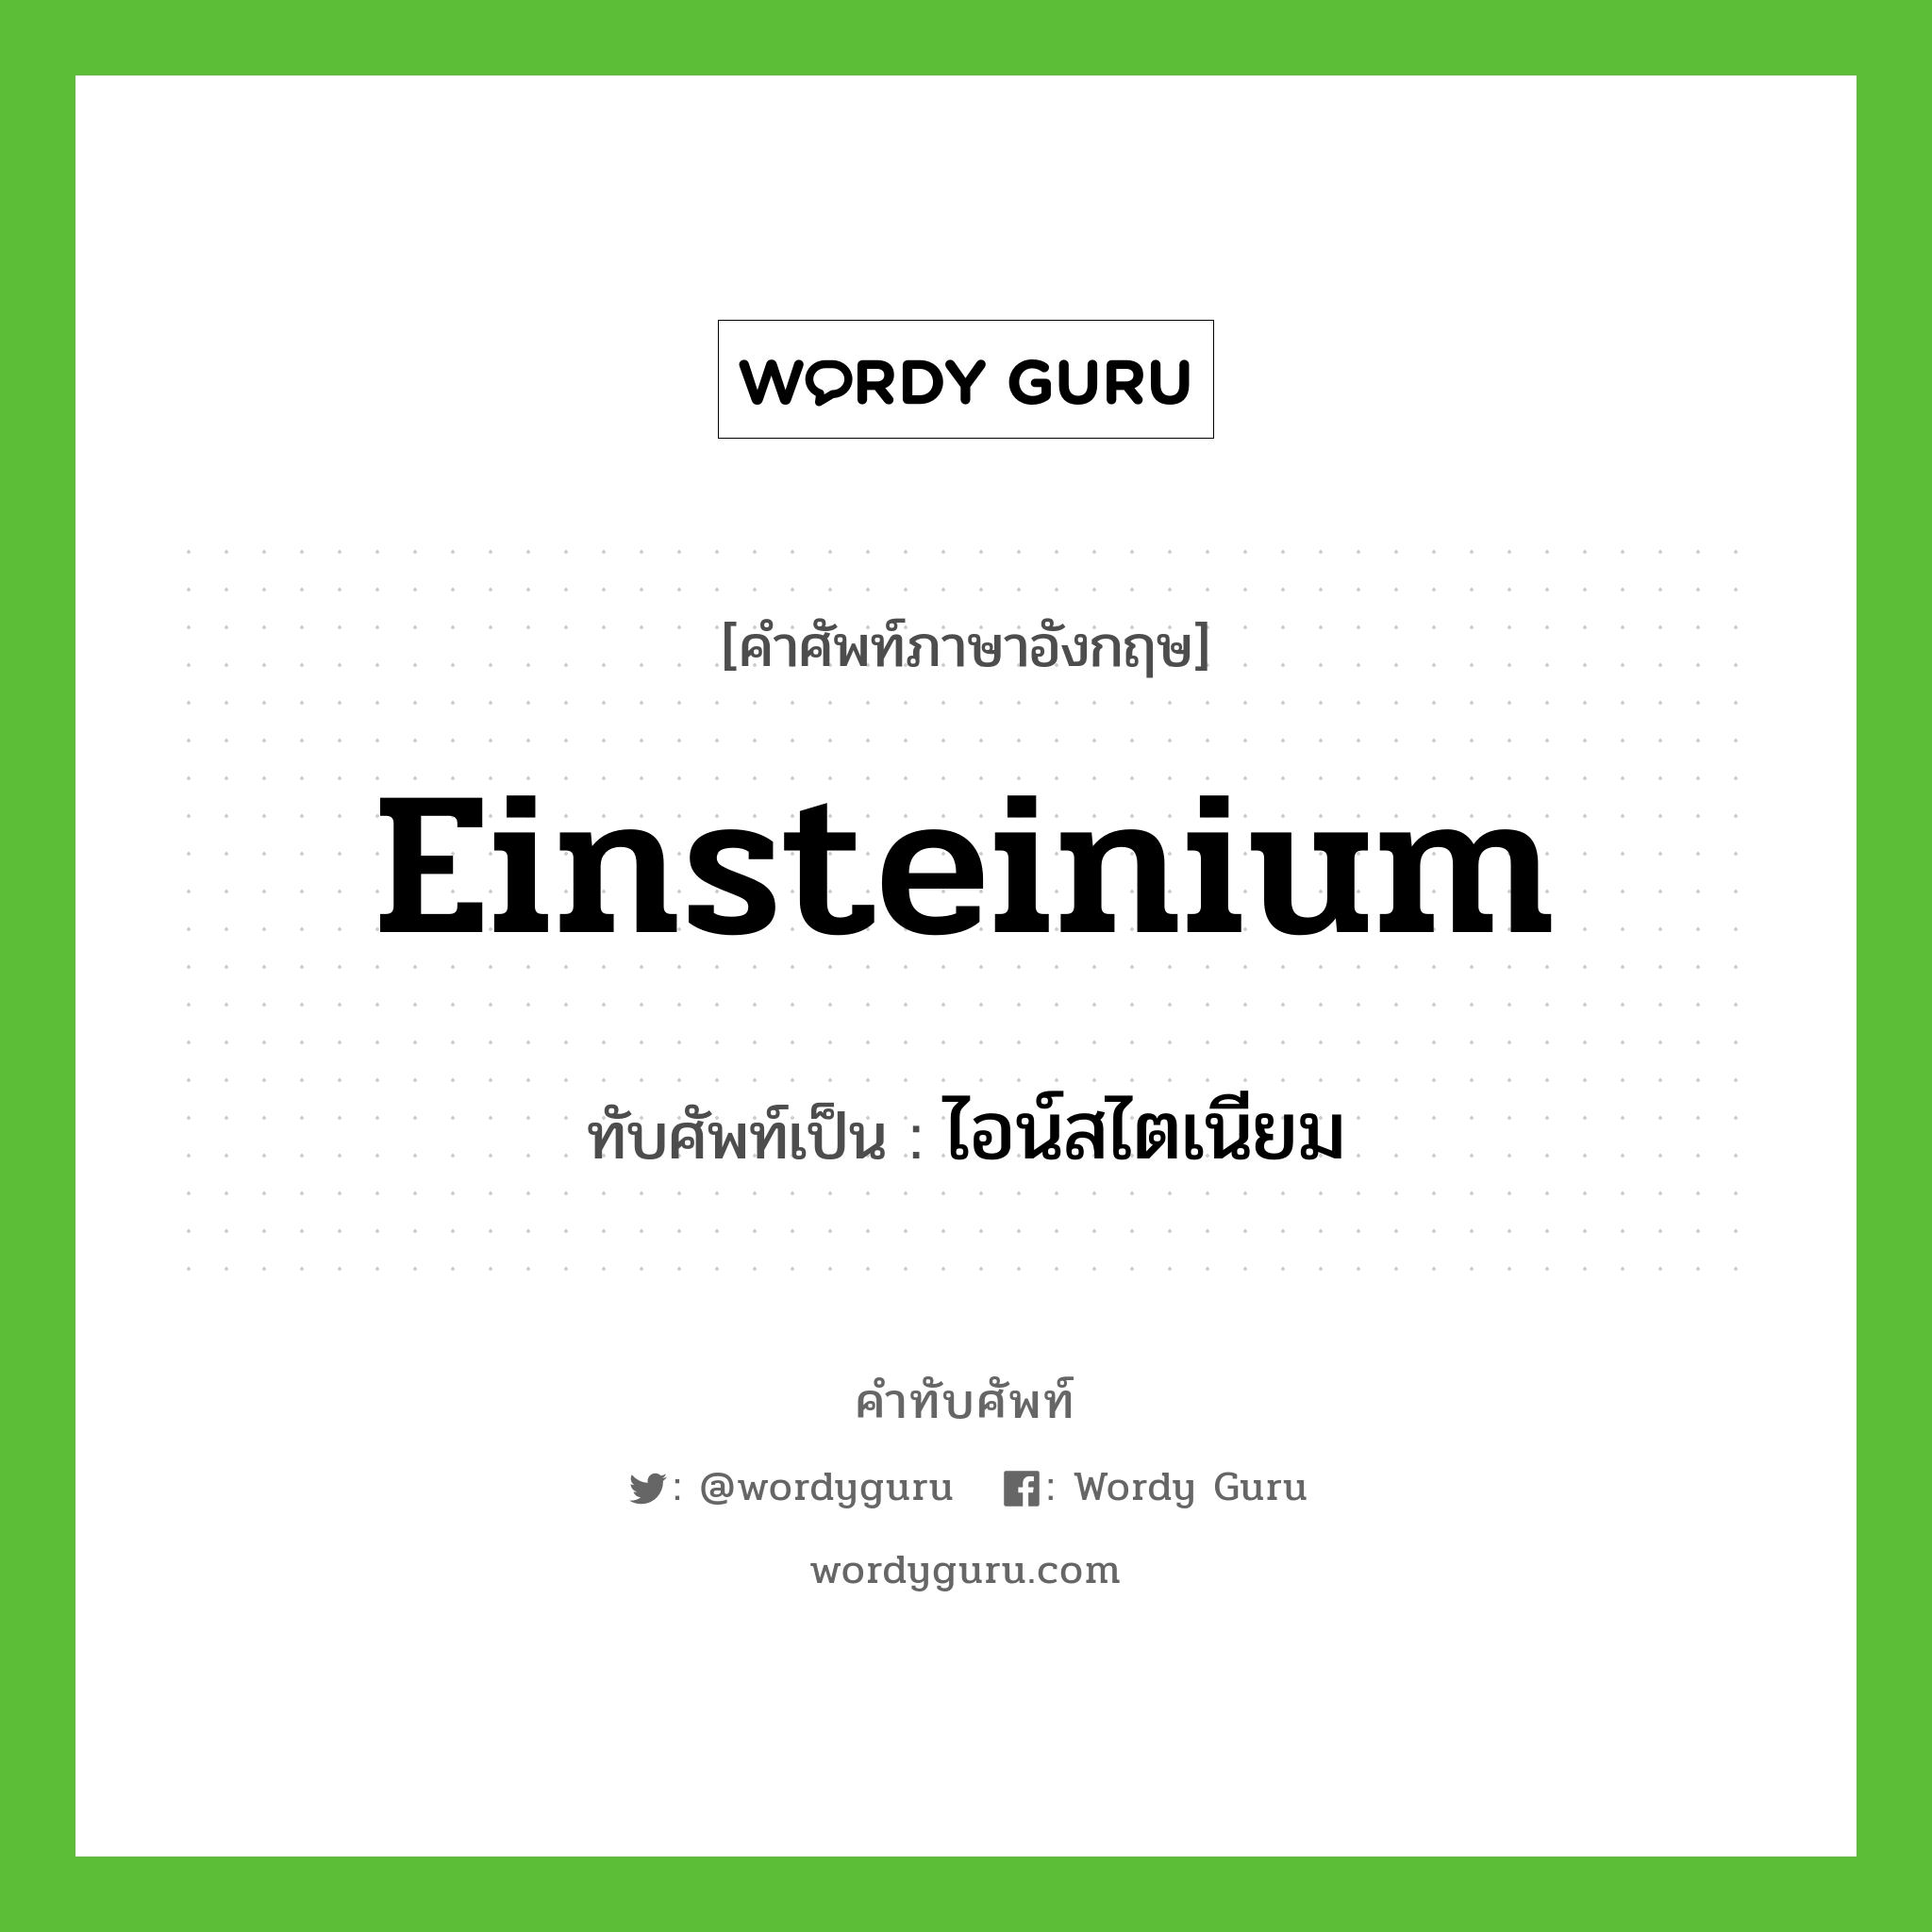 ไอน์สไตเนียม เขียนอย่างไร?, คำศัพท์ภาษาอังกฤษ ไอน์สไตเนียม ทับศัพท์เป็น Einsteinium